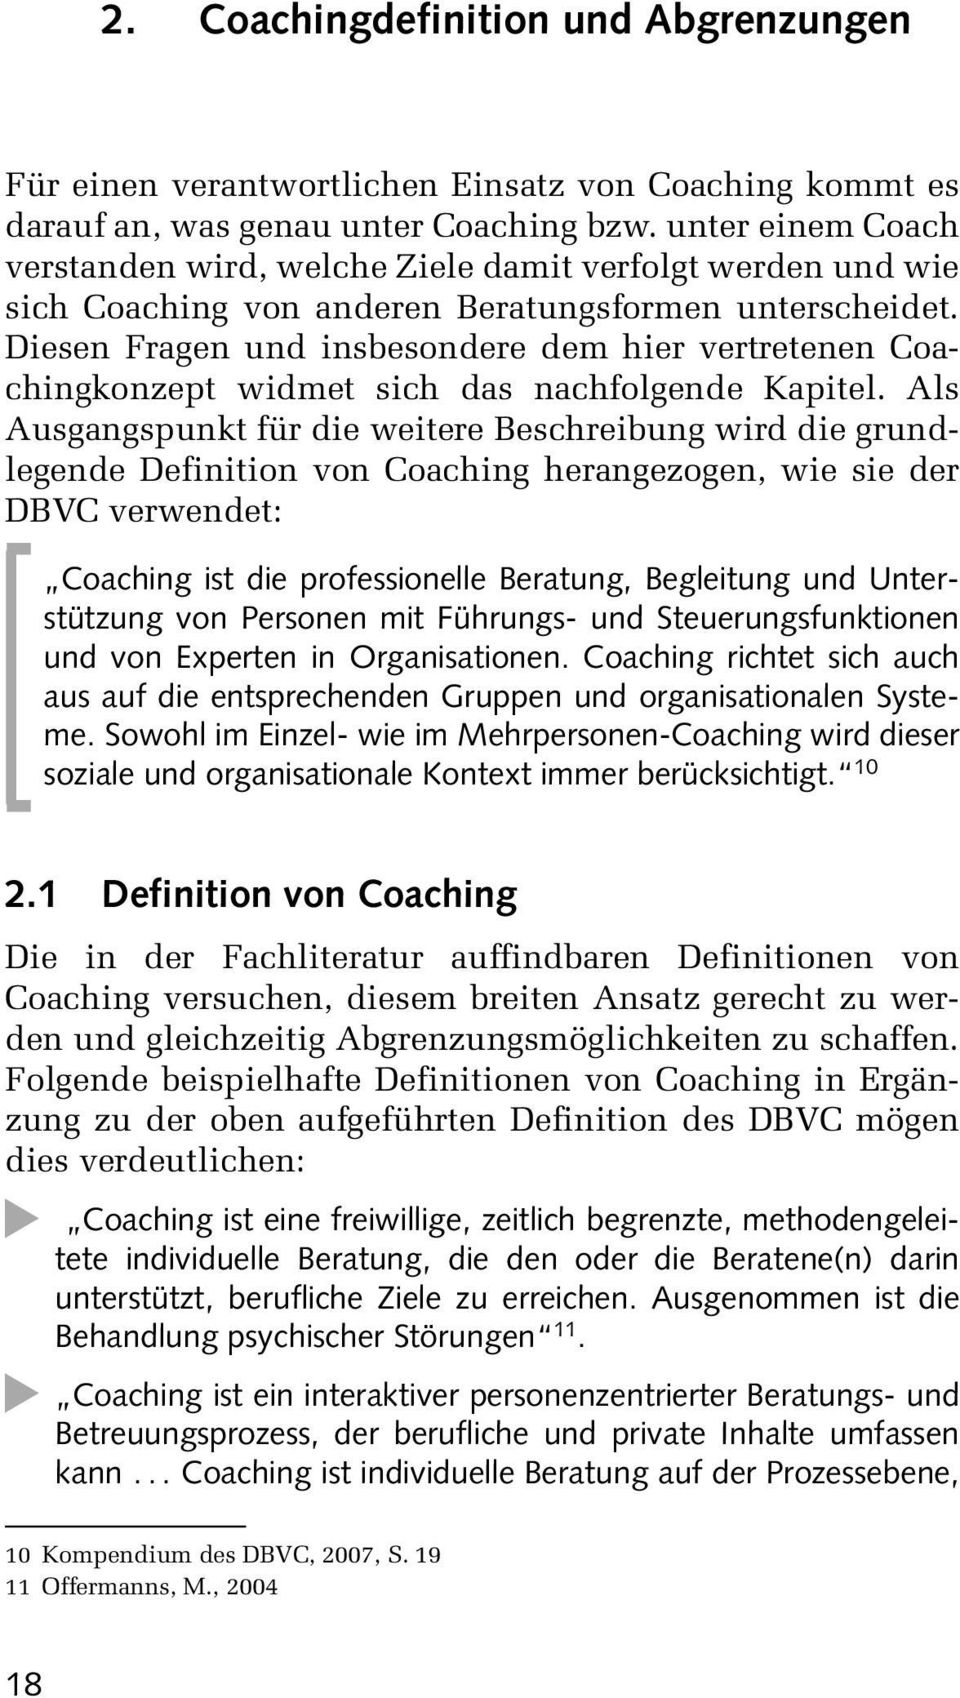 Dieen Fragen und inbeondere dem hier vertretenen Coachingkonzept widmet ich da nachfolgende Kapitel.